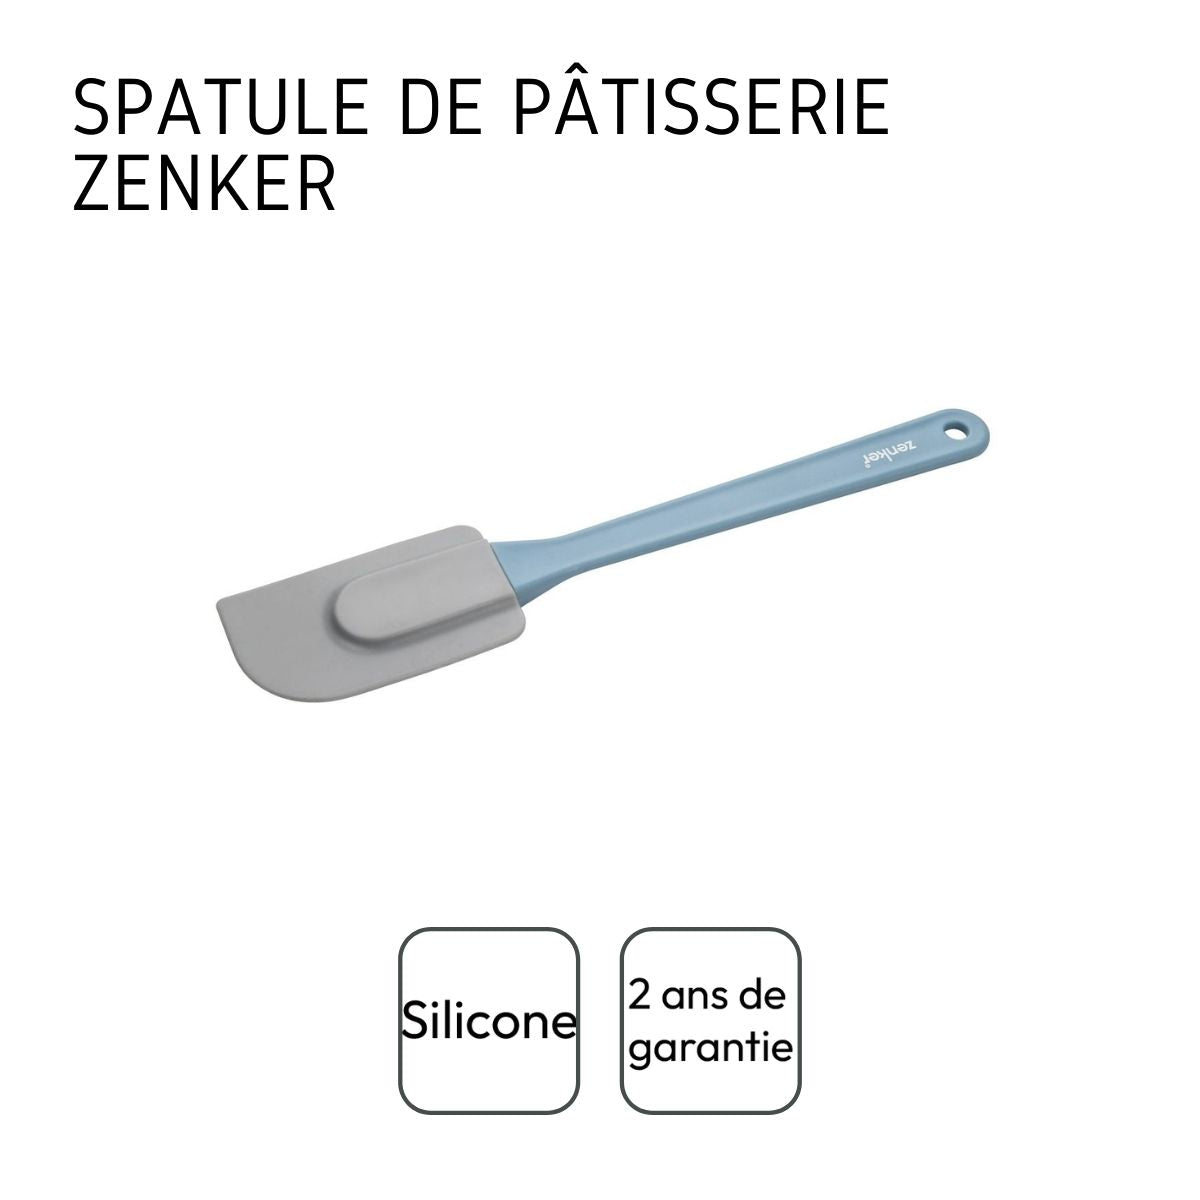 Spatule silicone grise et bleue 26,5 cm Zenker Sweet Sensation